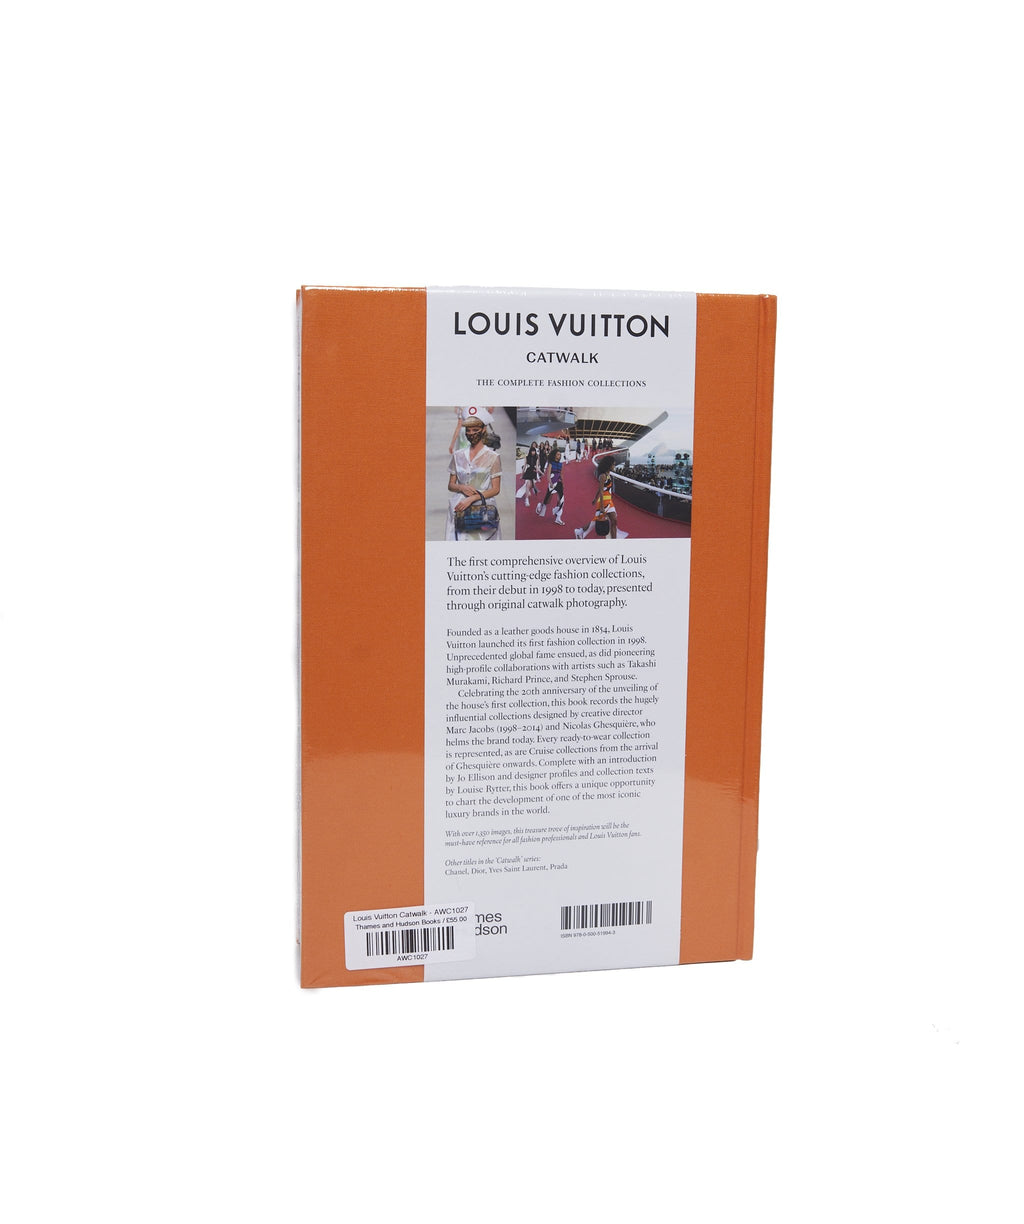 Louis Vuitton: Catwalk – Design Museum Shop